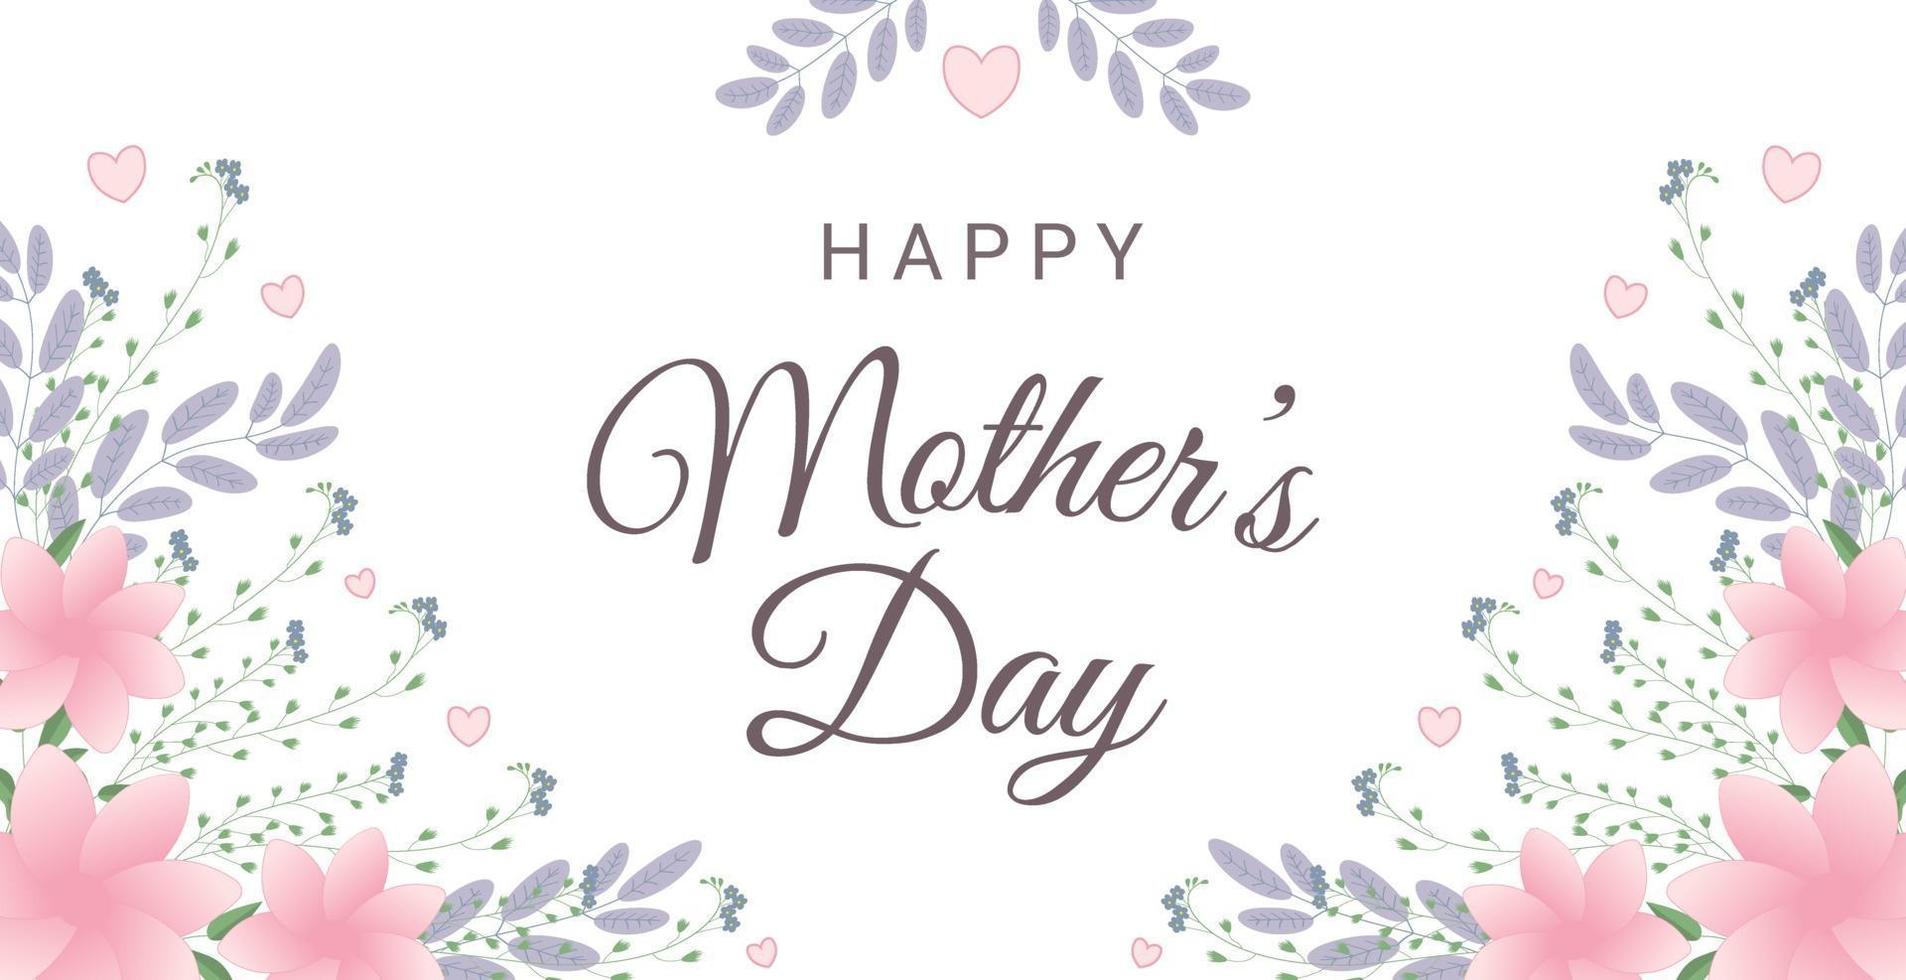 gelukkige moederdag wenskaart met bloemen en harten. perfect voor wenskaarten, websites, banners of tags. vector illustratie.